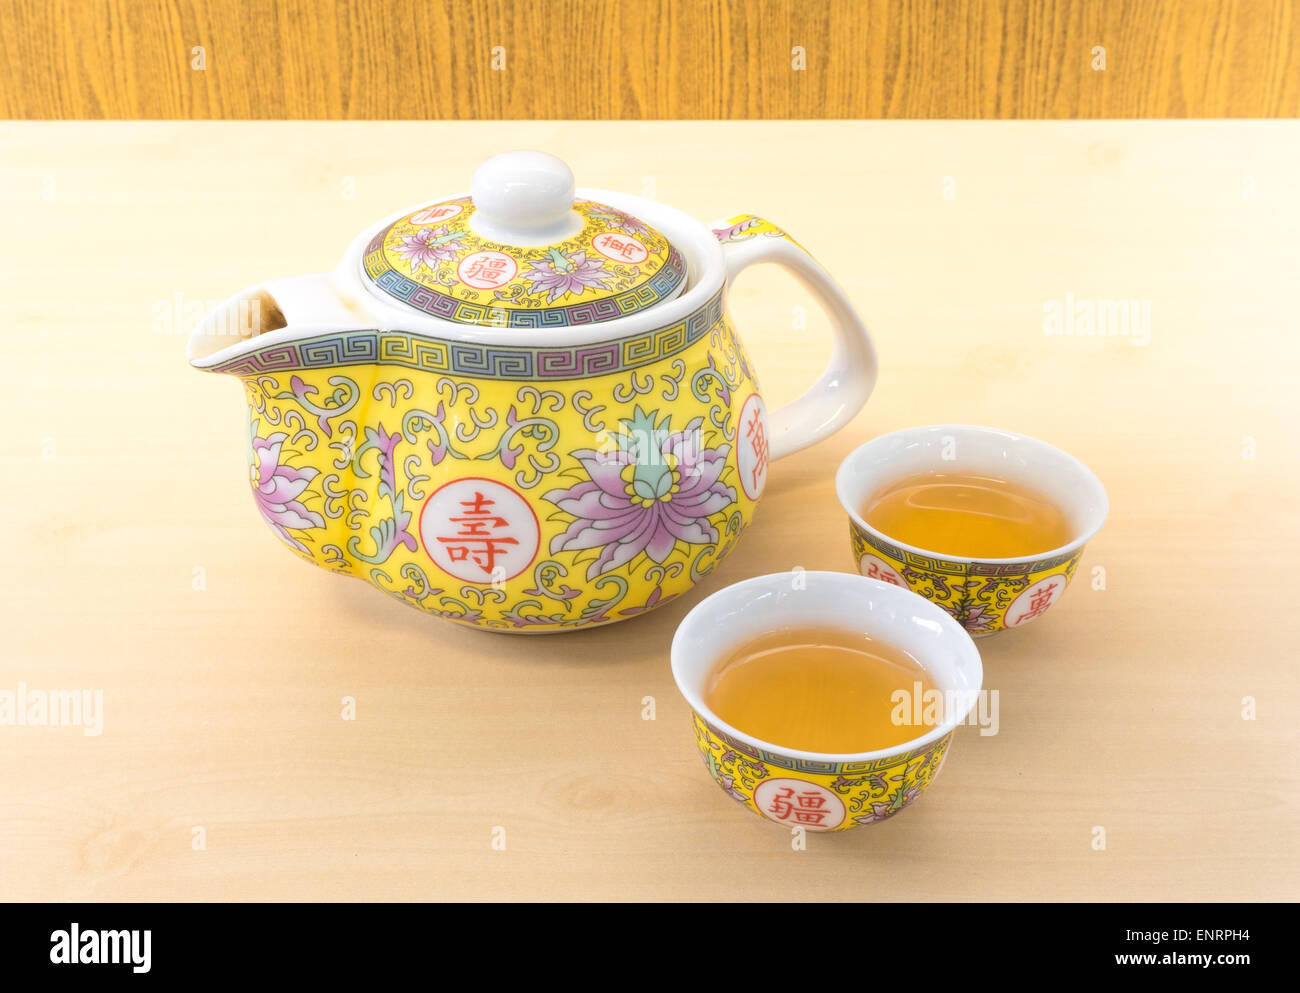 Chinesische Teekanne Set mit zwei kleinen Teetasse Stockfoto